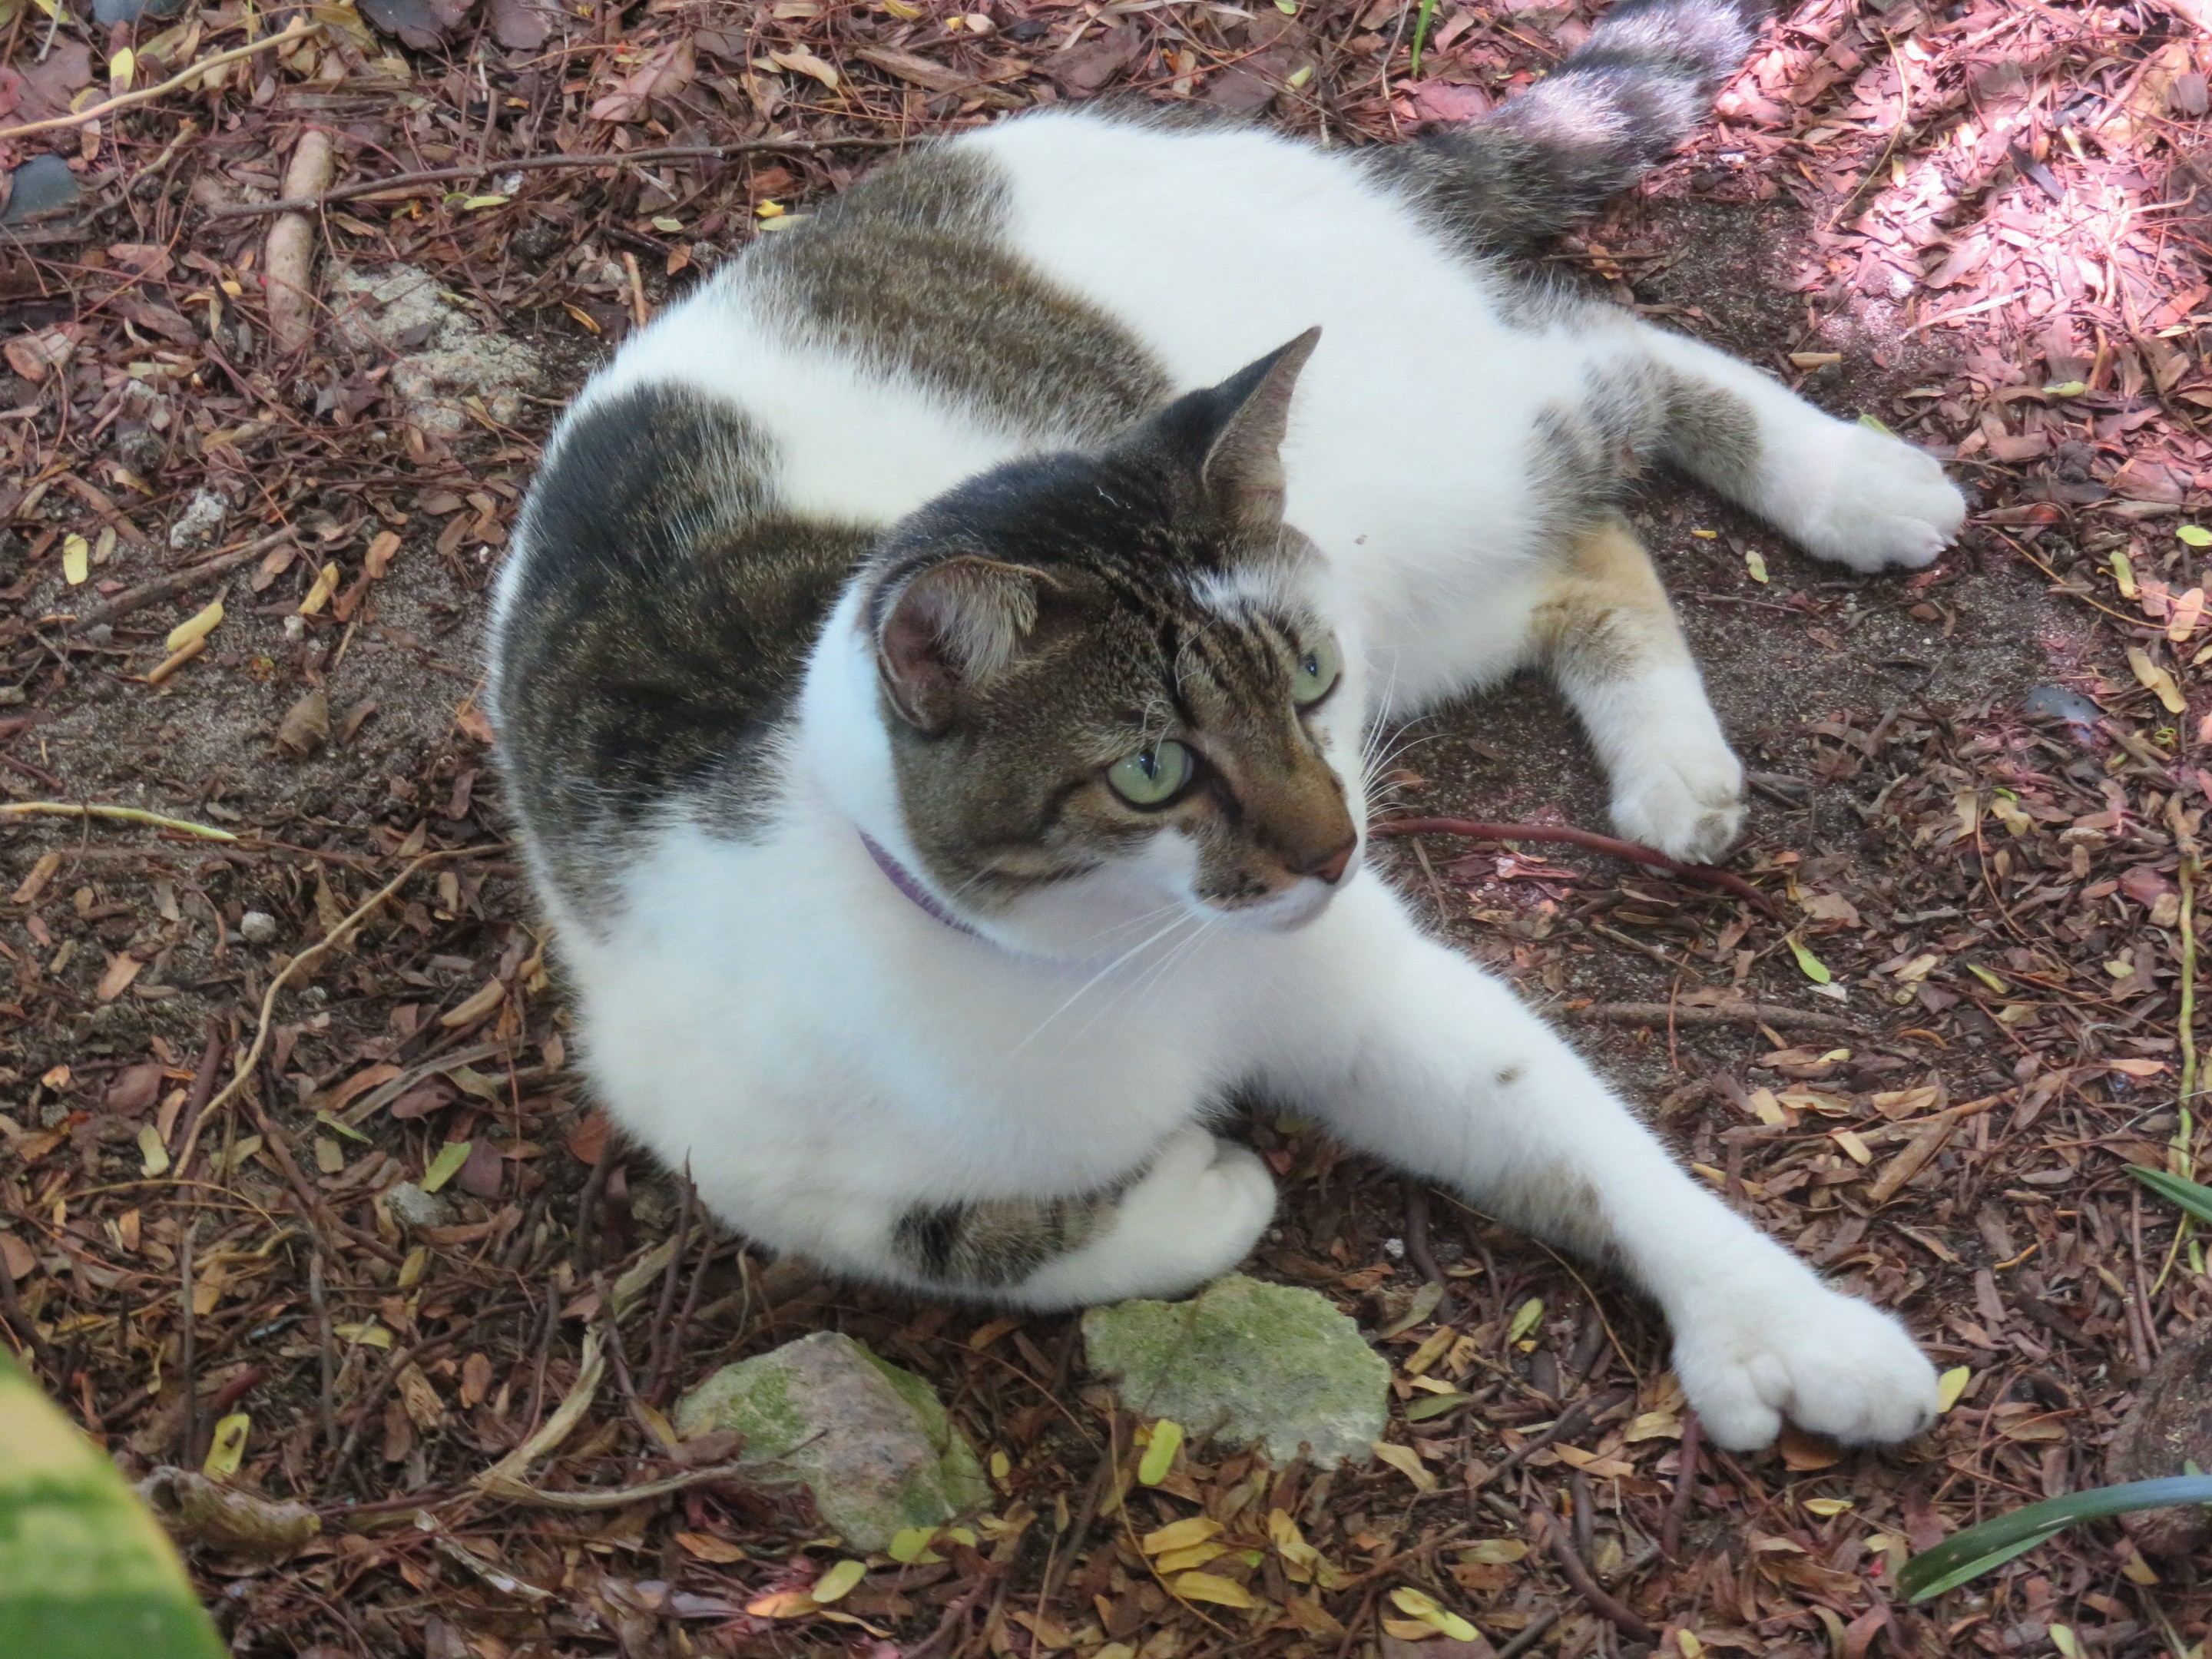 Un des chats à 6 doigts, dans le jardin d'Ernest Hemingway